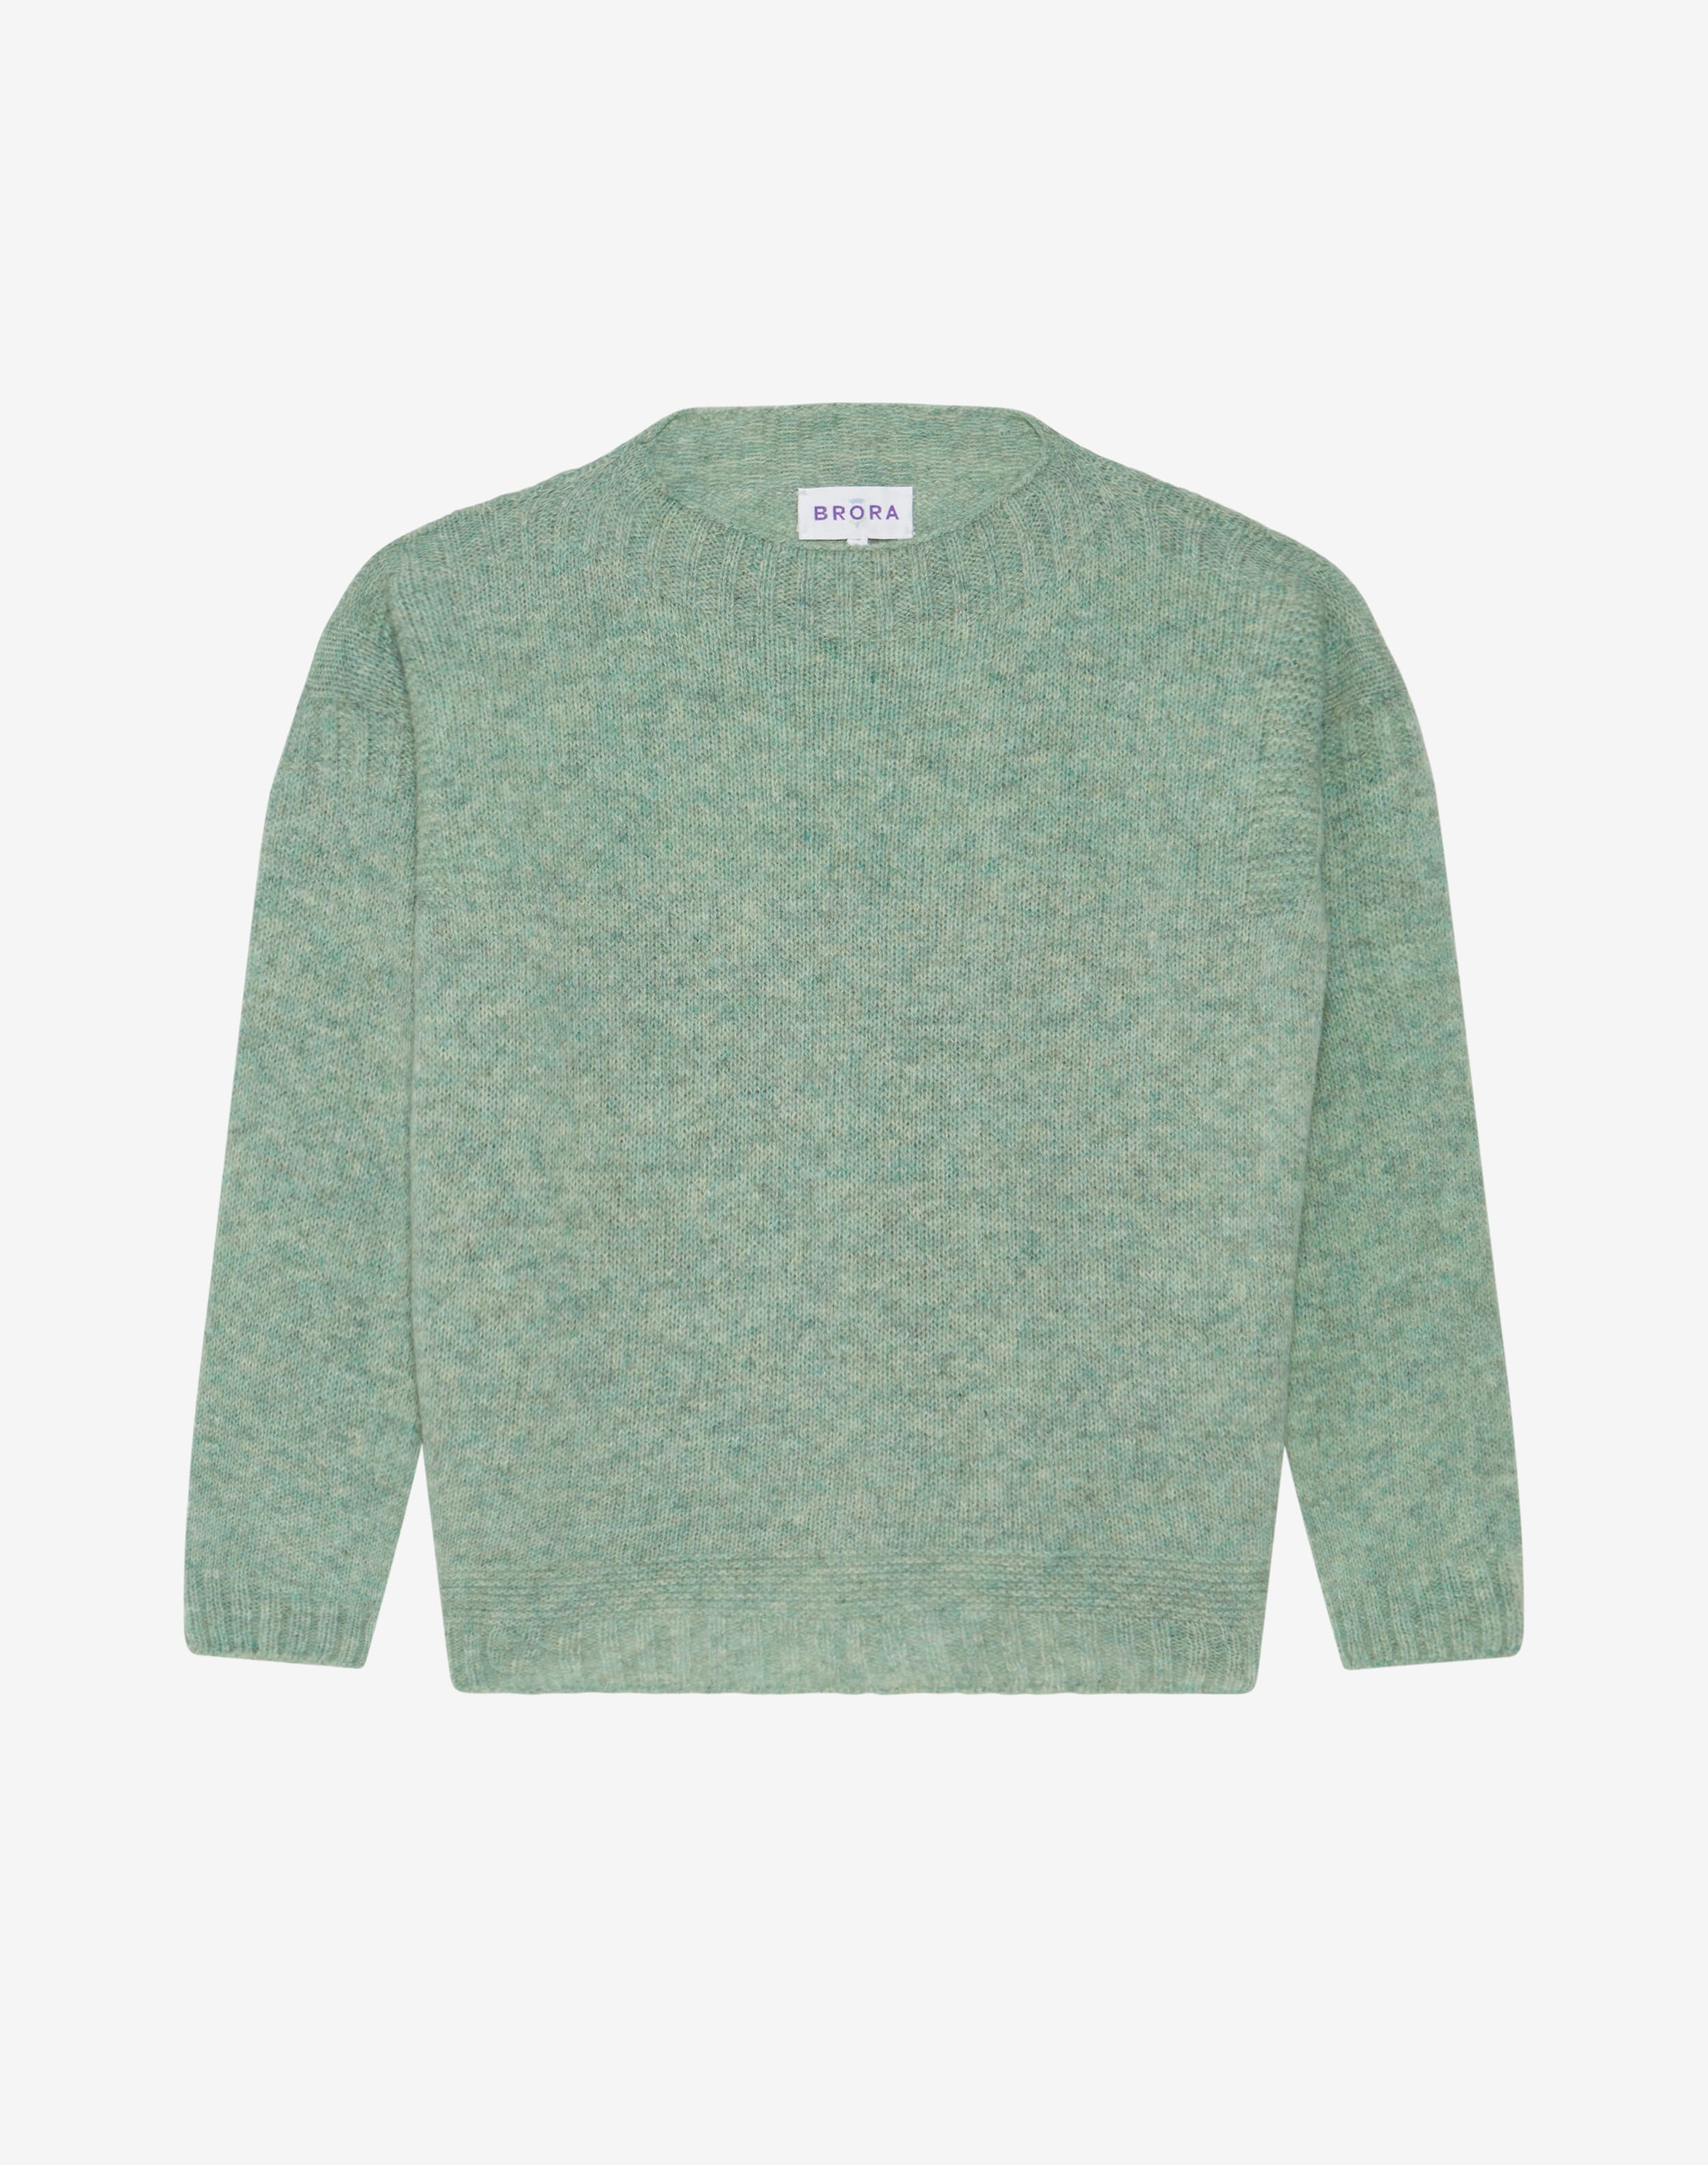 Wool Guernsey Jumper in Mint | Knitwear | Brora